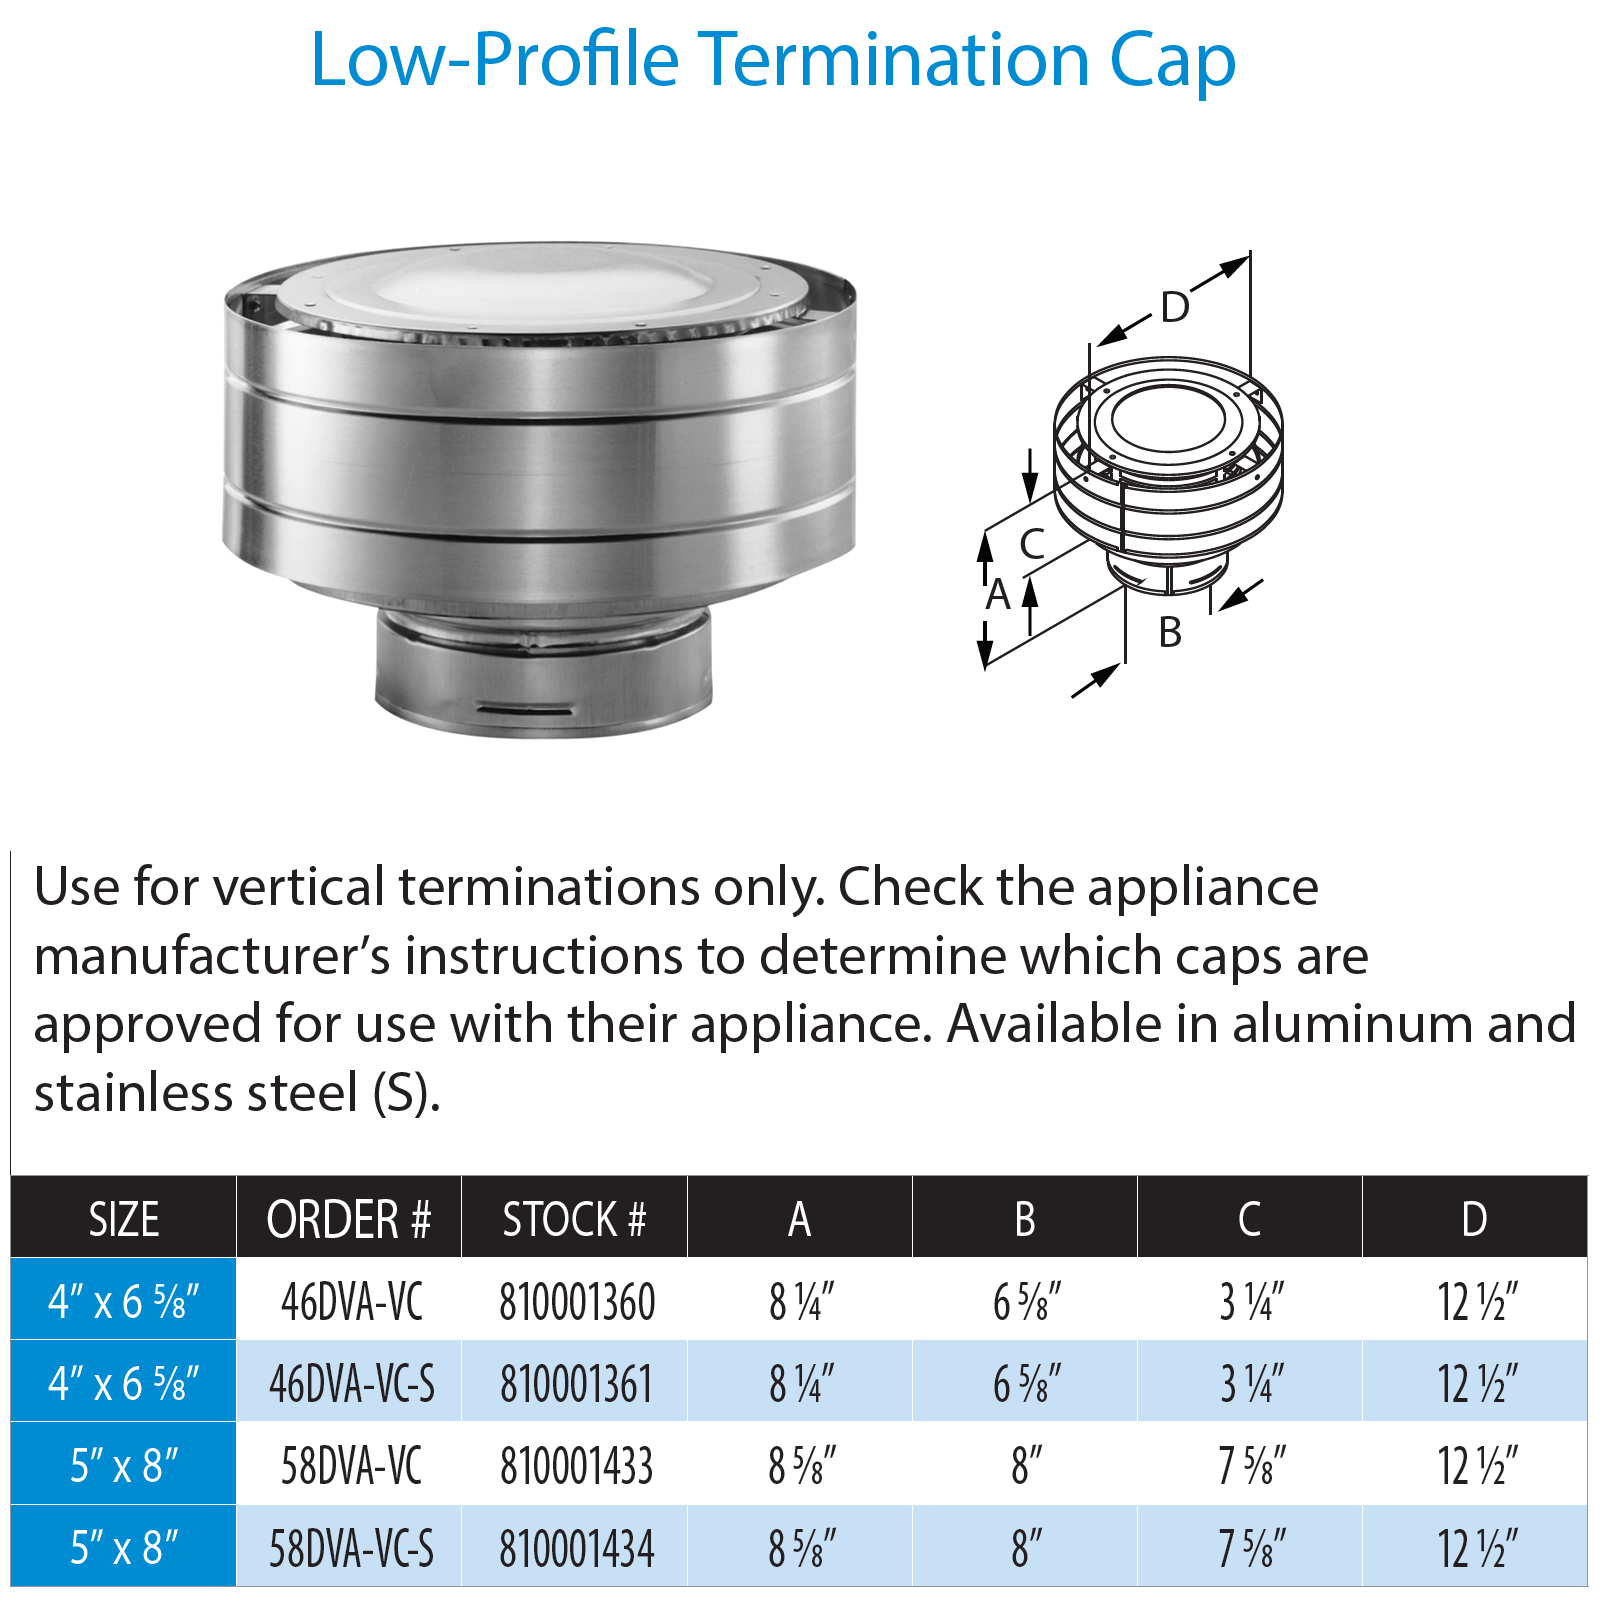 DuraVent DVP Low-Profile Termination Cap - Aluminum | 58DVA-VC